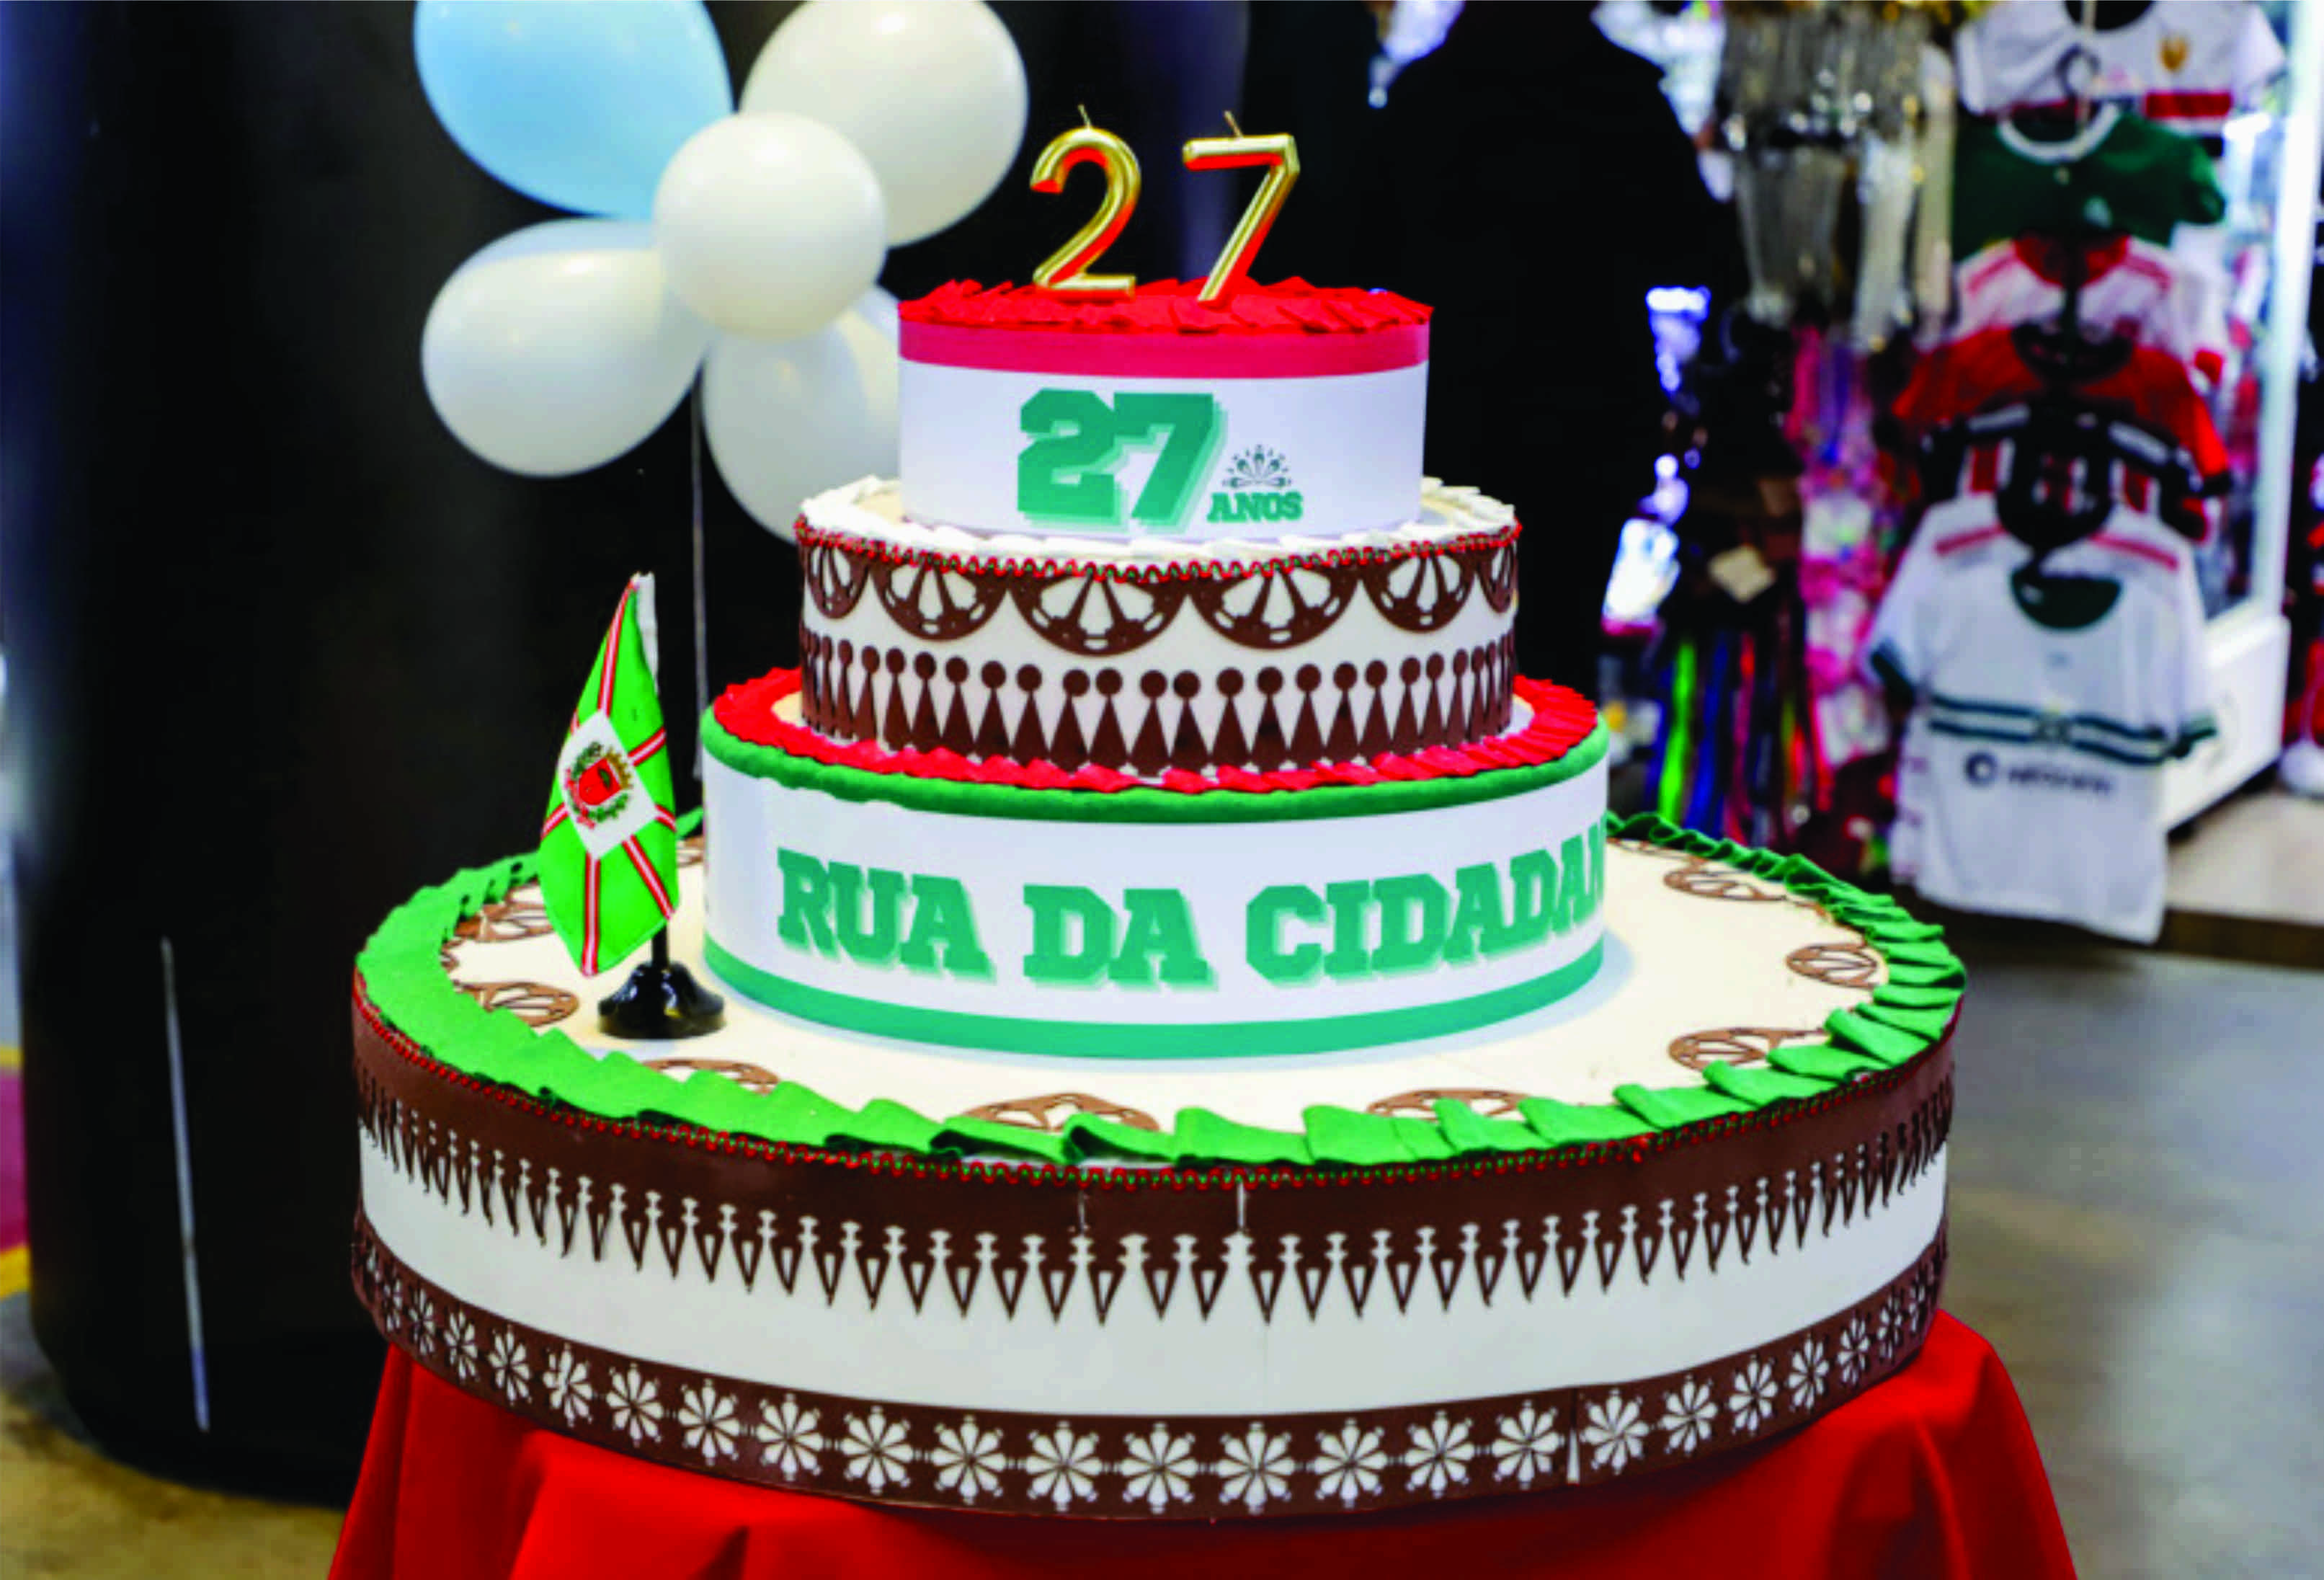 População de Curitiba comemora o aniversário de 27 anos da Rua da Cidadania da Matriz